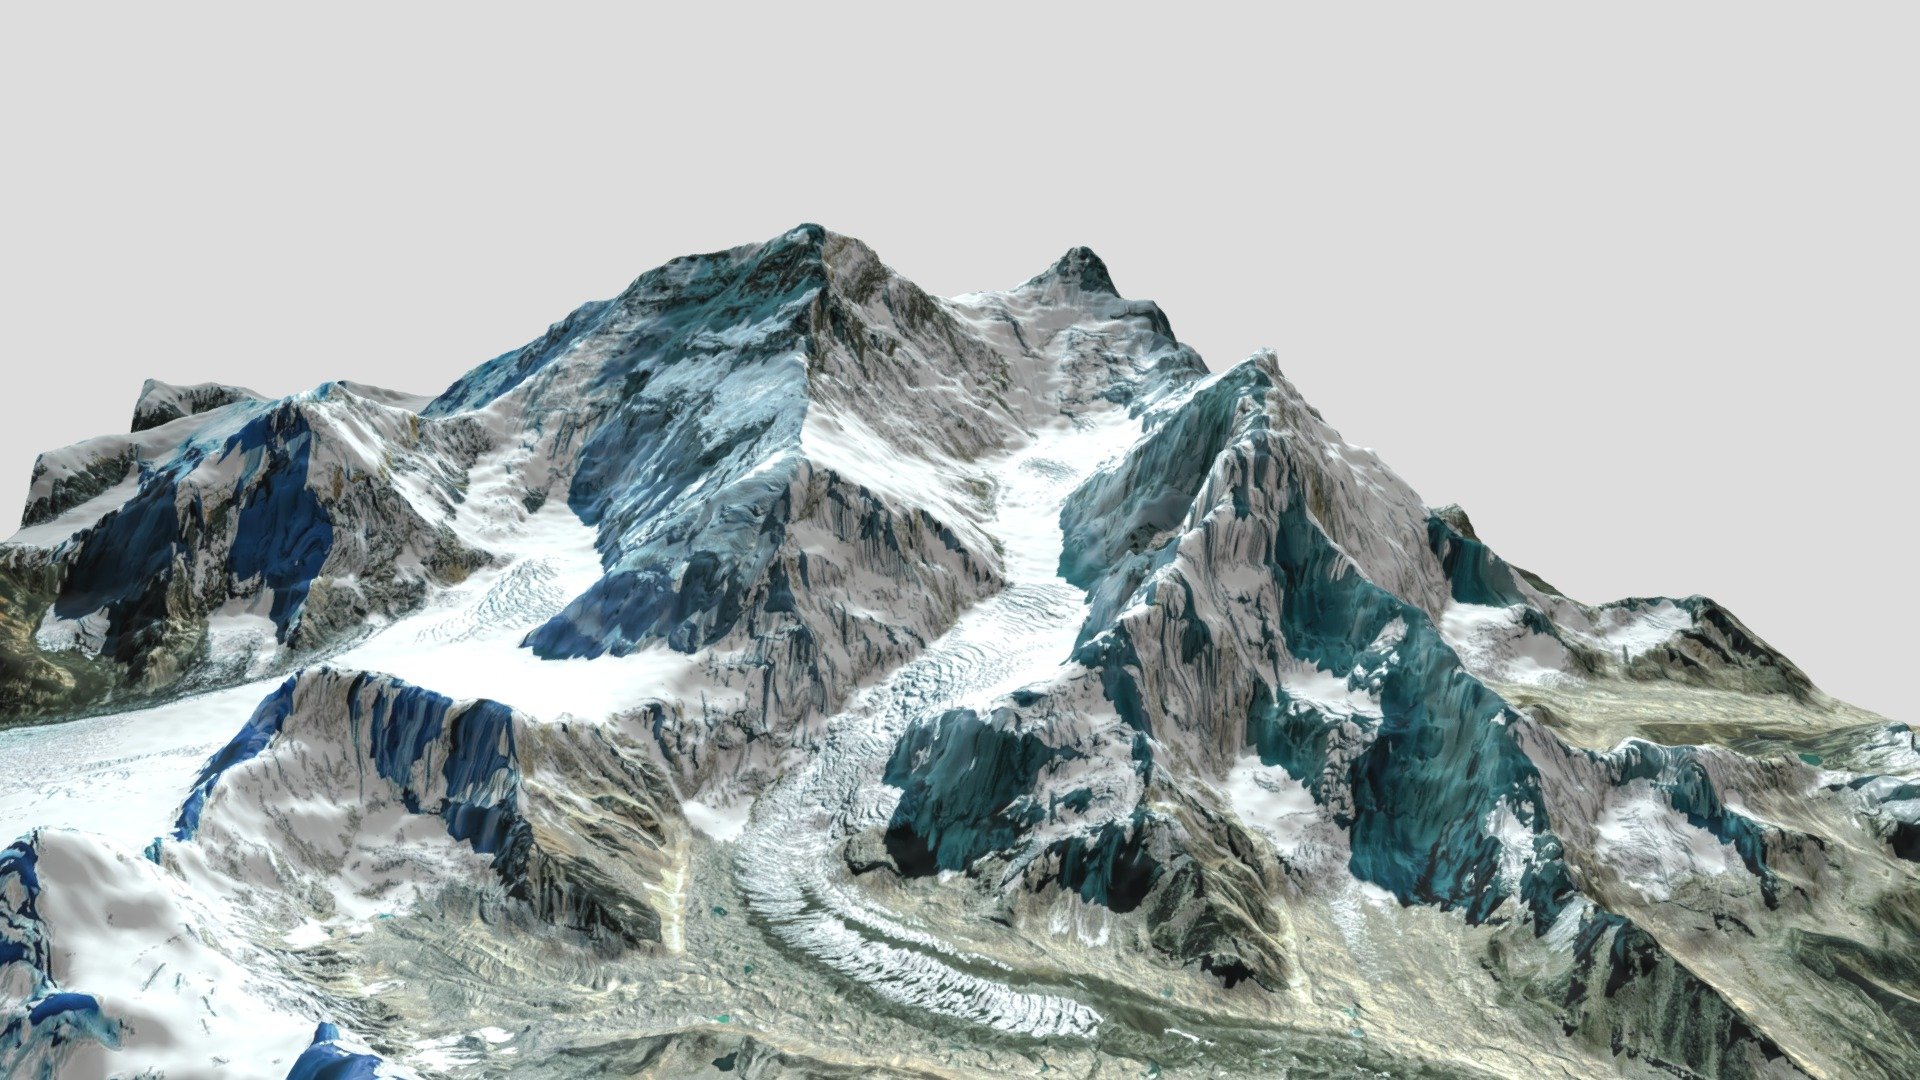 Mount Everest 3d Model Free Download